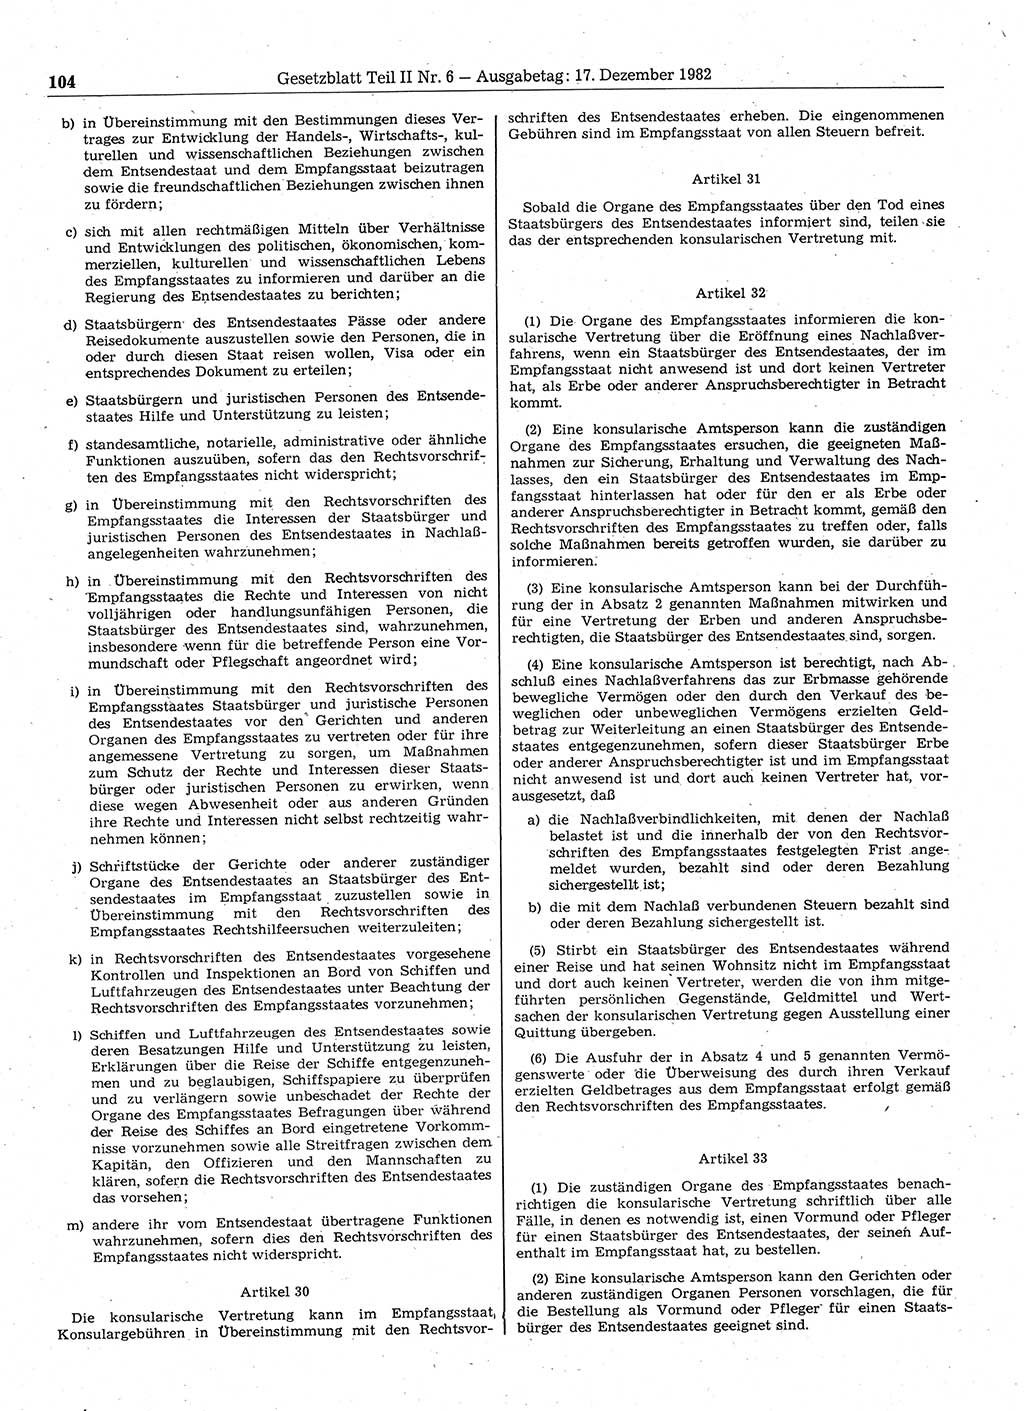 Gesetzblatt (GBl.) der Deutschen Demokratischen Republik (DDR) Teil ⅠⅠ 1982, Seite 104 (GBl. DDR ⅠⅠ 1982, S. 104)